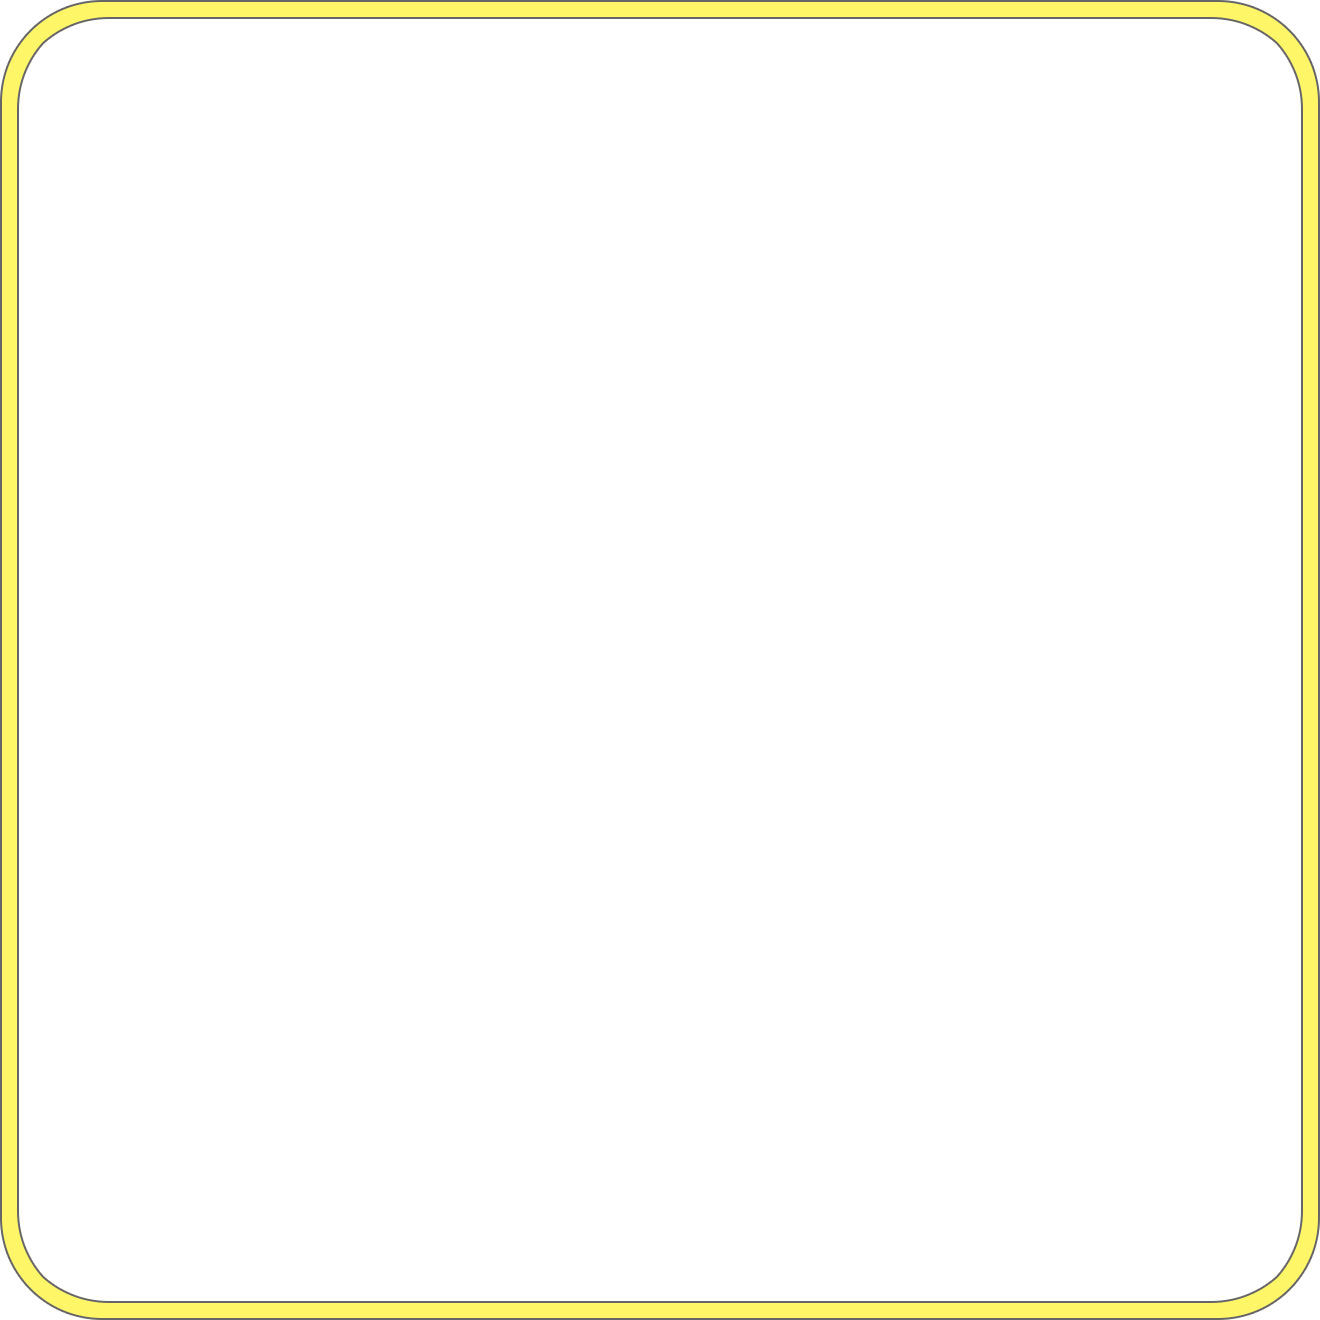 画像サンプル-黄色・丸い角